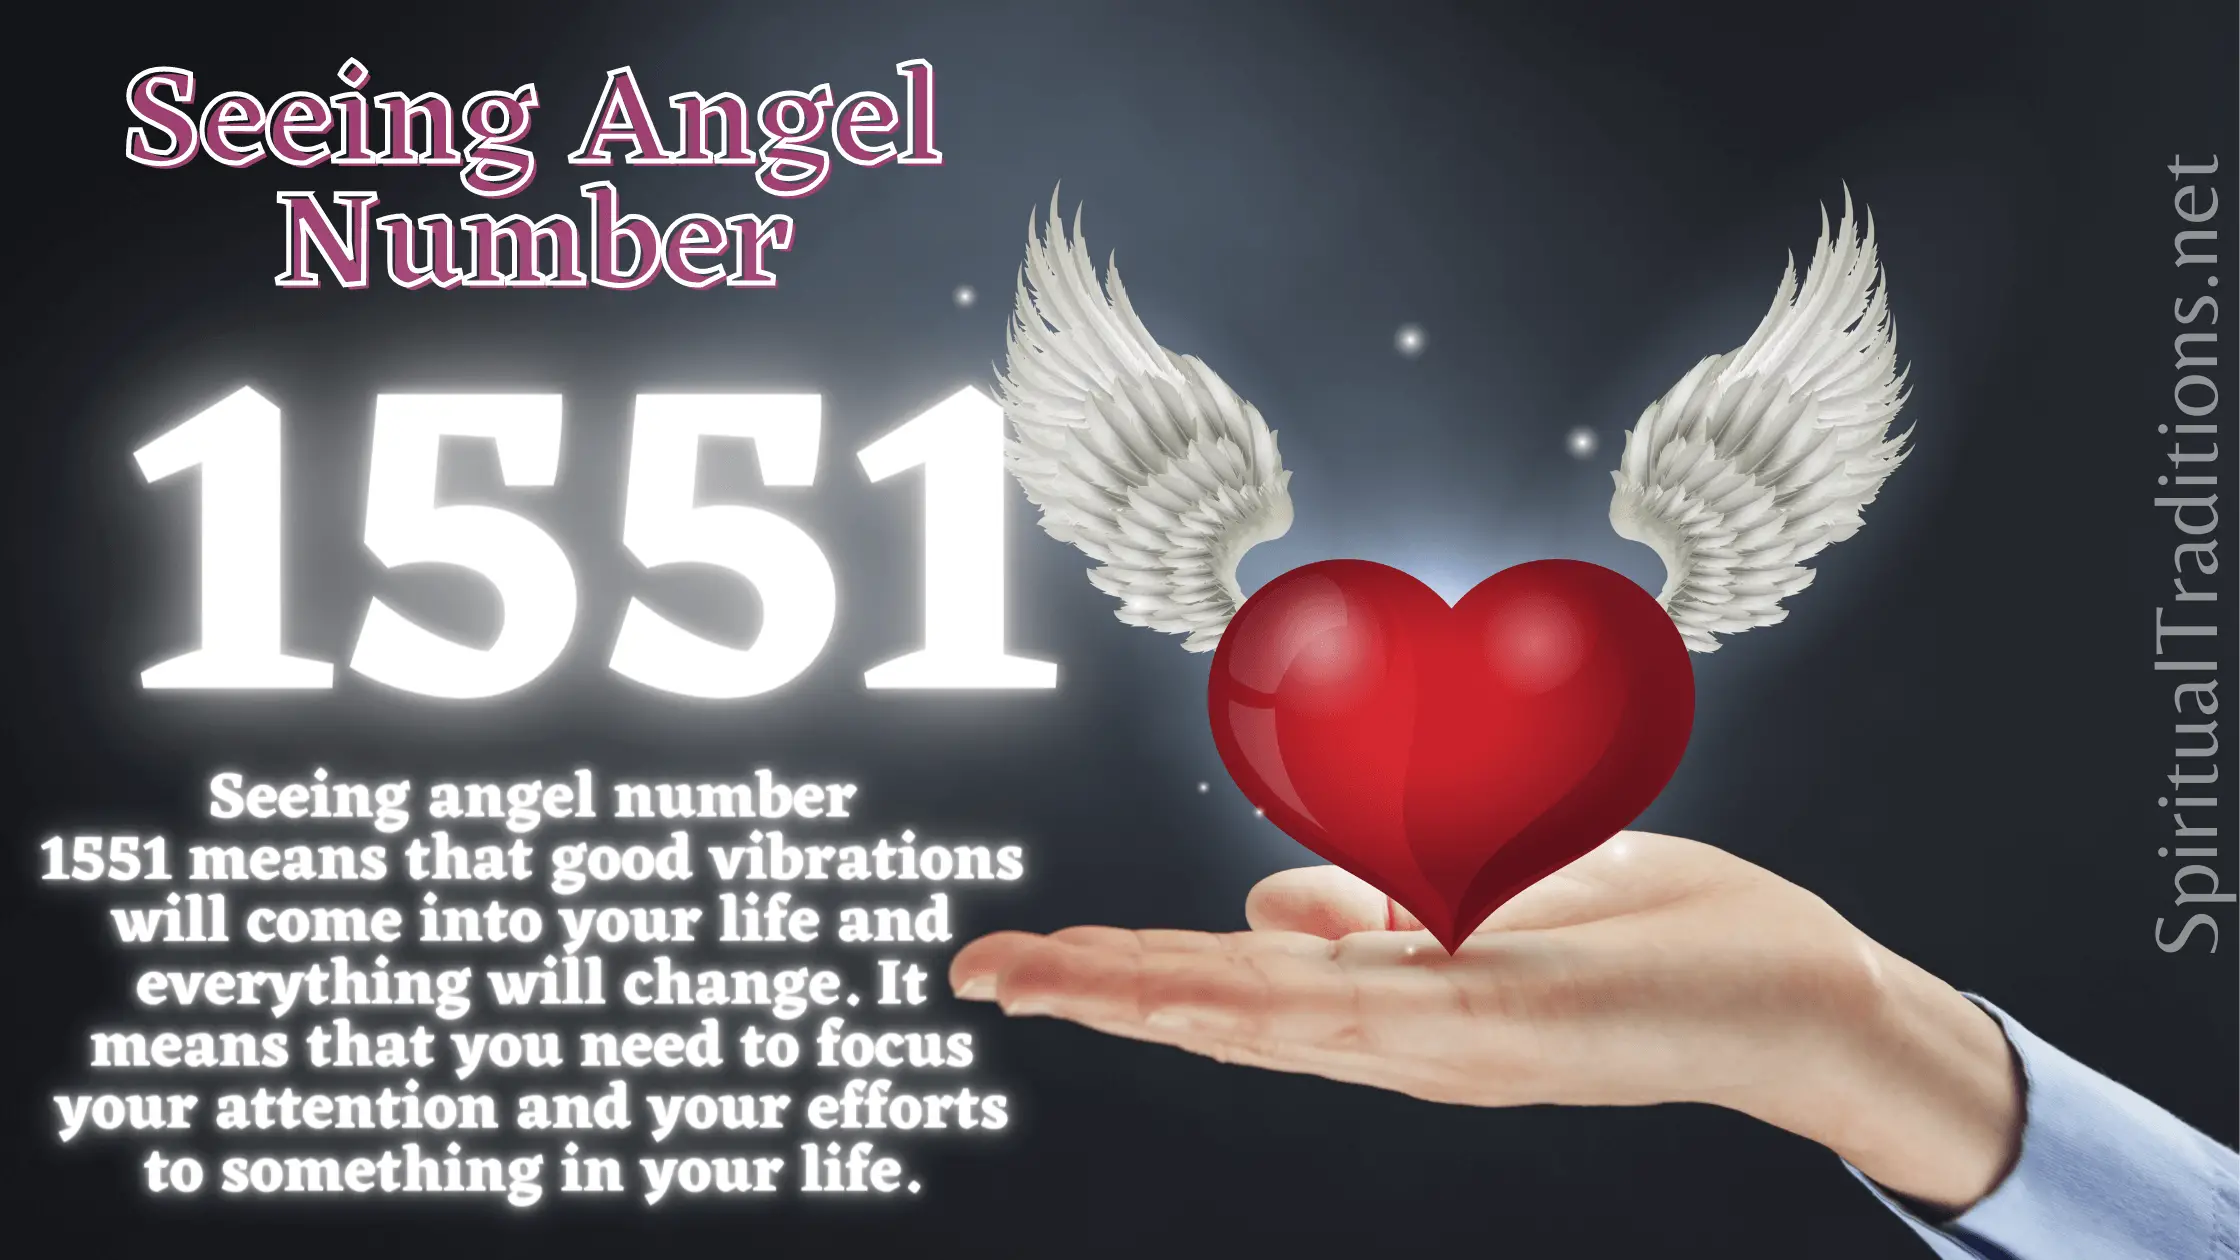 Seeing 1551 Angel Number